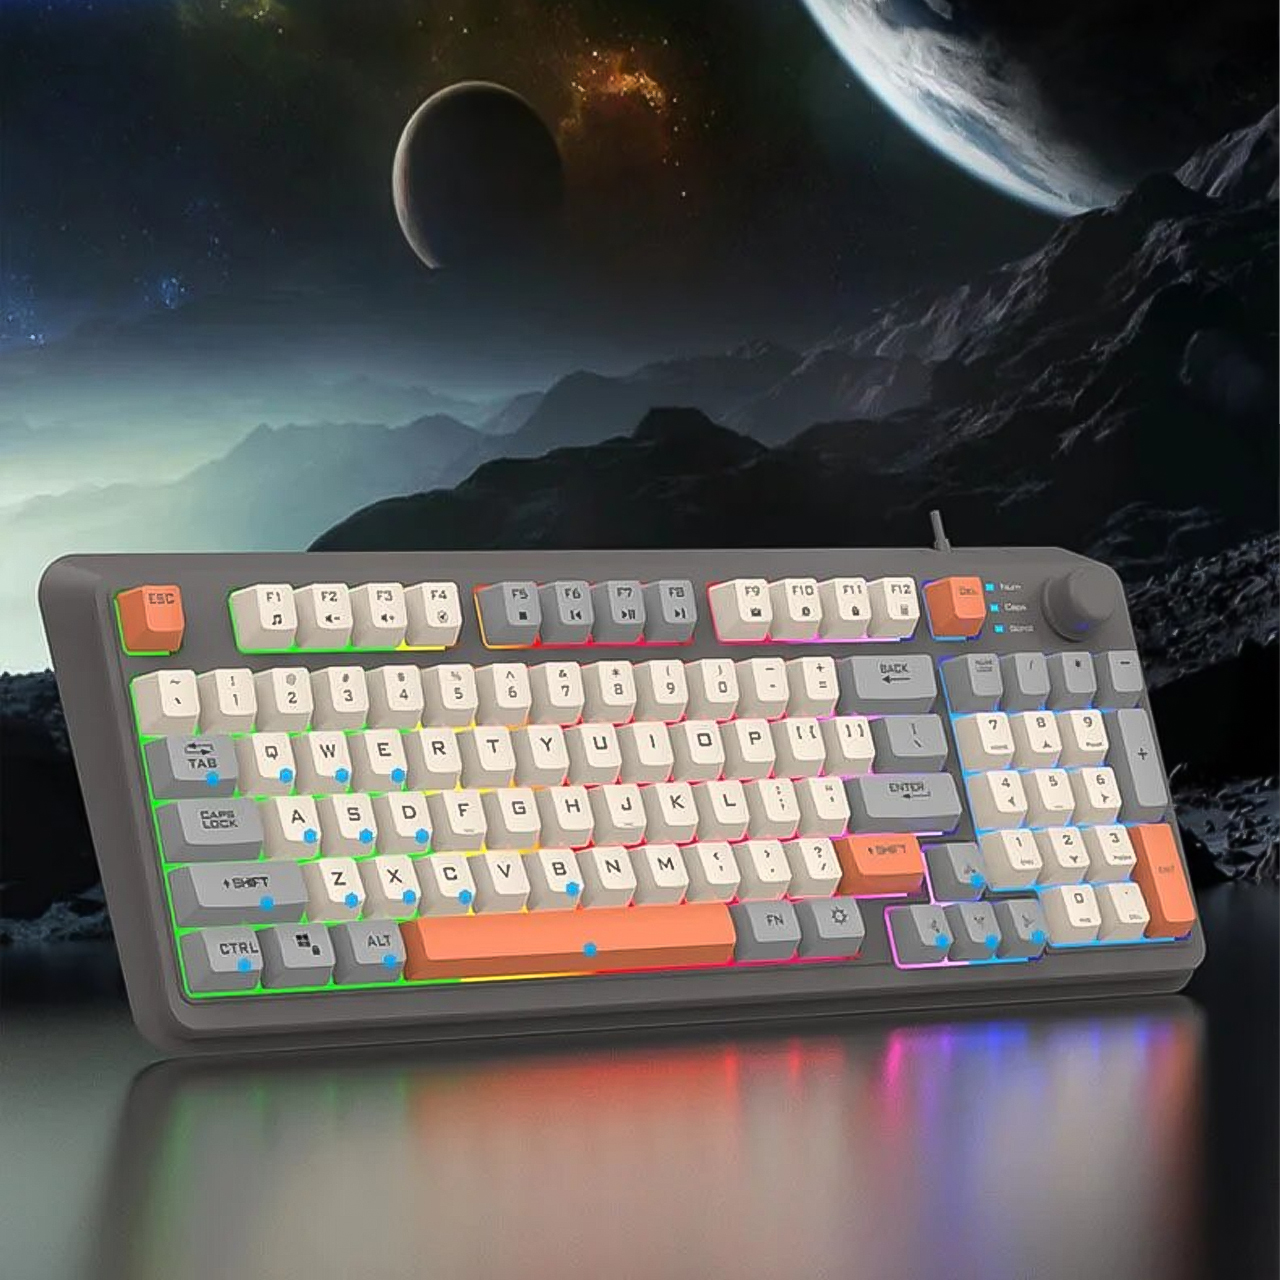 Bộ bàn phím và chuột máy tính giả cơ chuyên game Vinetteam XUNFOX K820 bộ bàn phím chuột chơi game thiết kế 94 phím có led 7 màu cực đẹp tích hợp nút chỉnh âm lượng, gõ êm dùng cho chơi game, văn phòng - hàng chính hãng